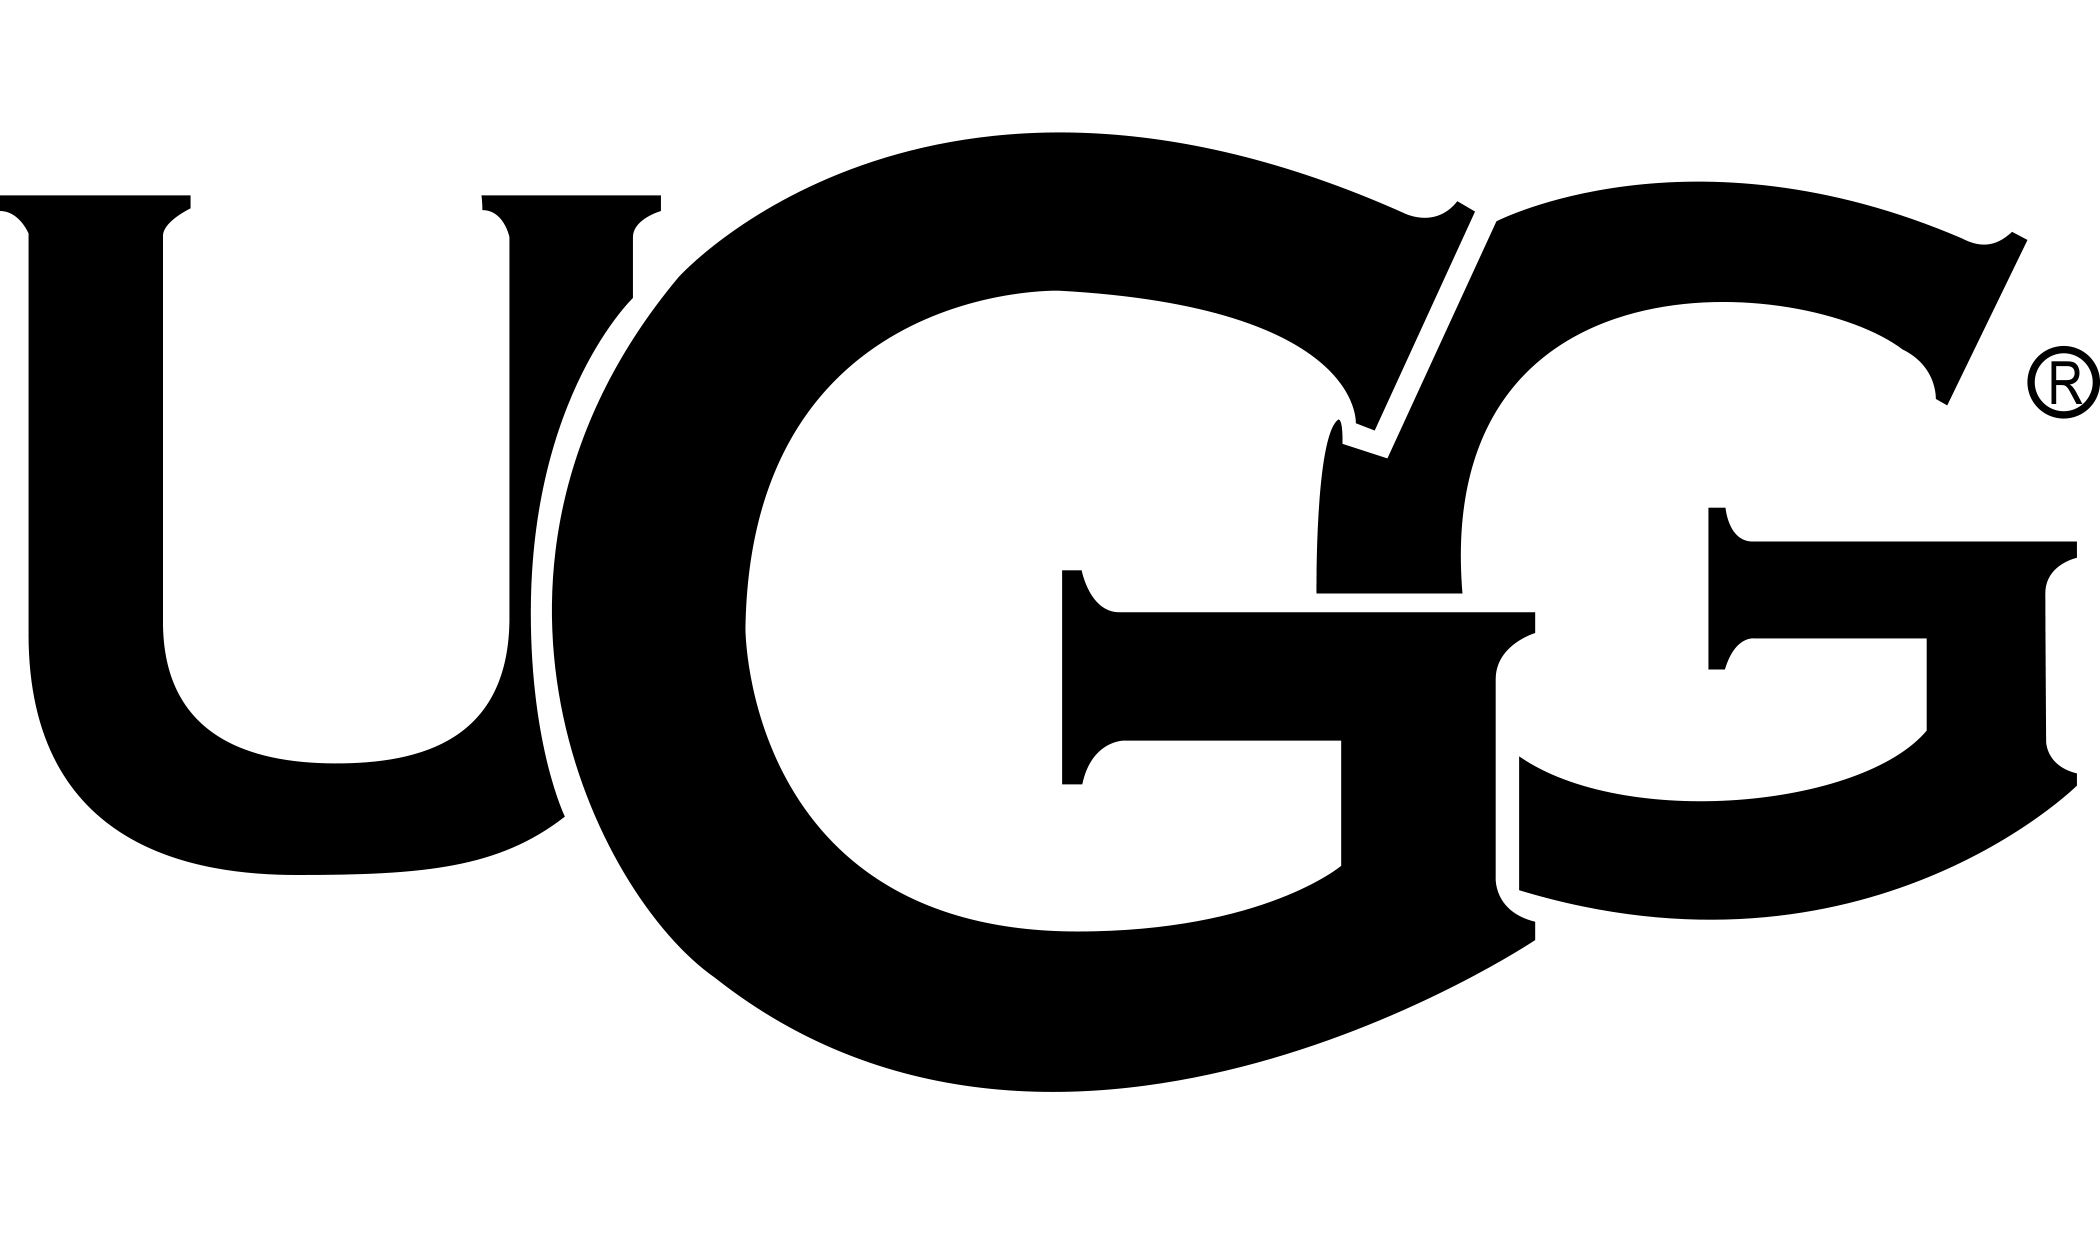 UGG - האג